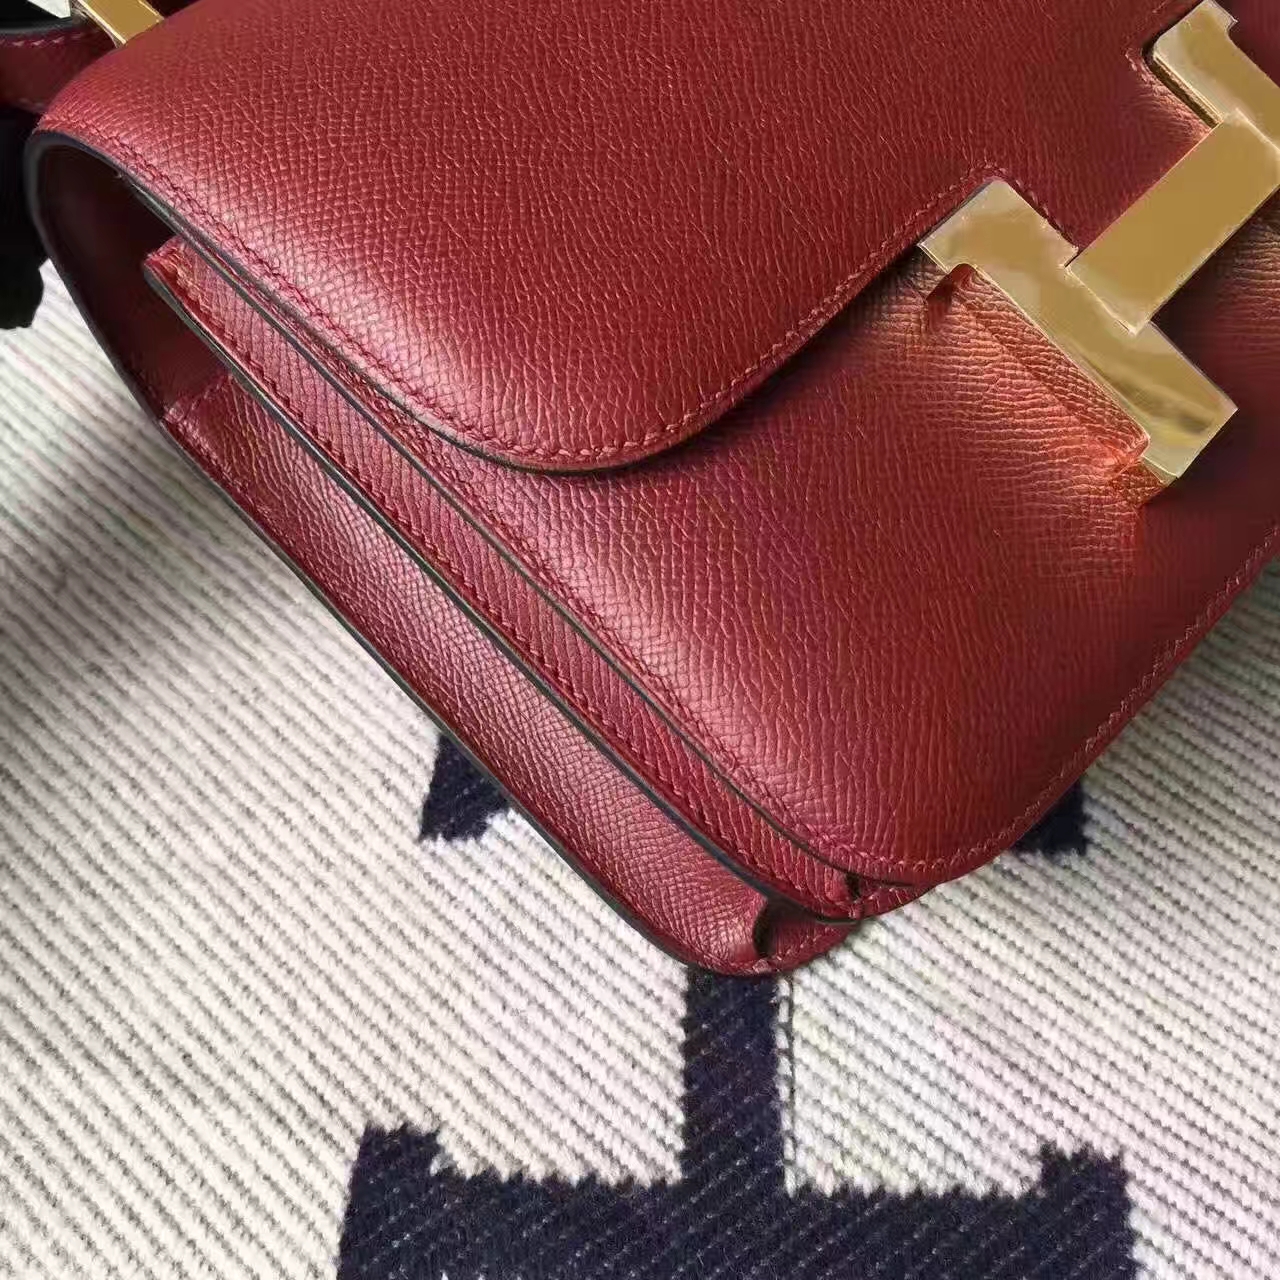 Discount Hermes CK55 Rouge Hermes Epsom Leather Constance Bag 23cm